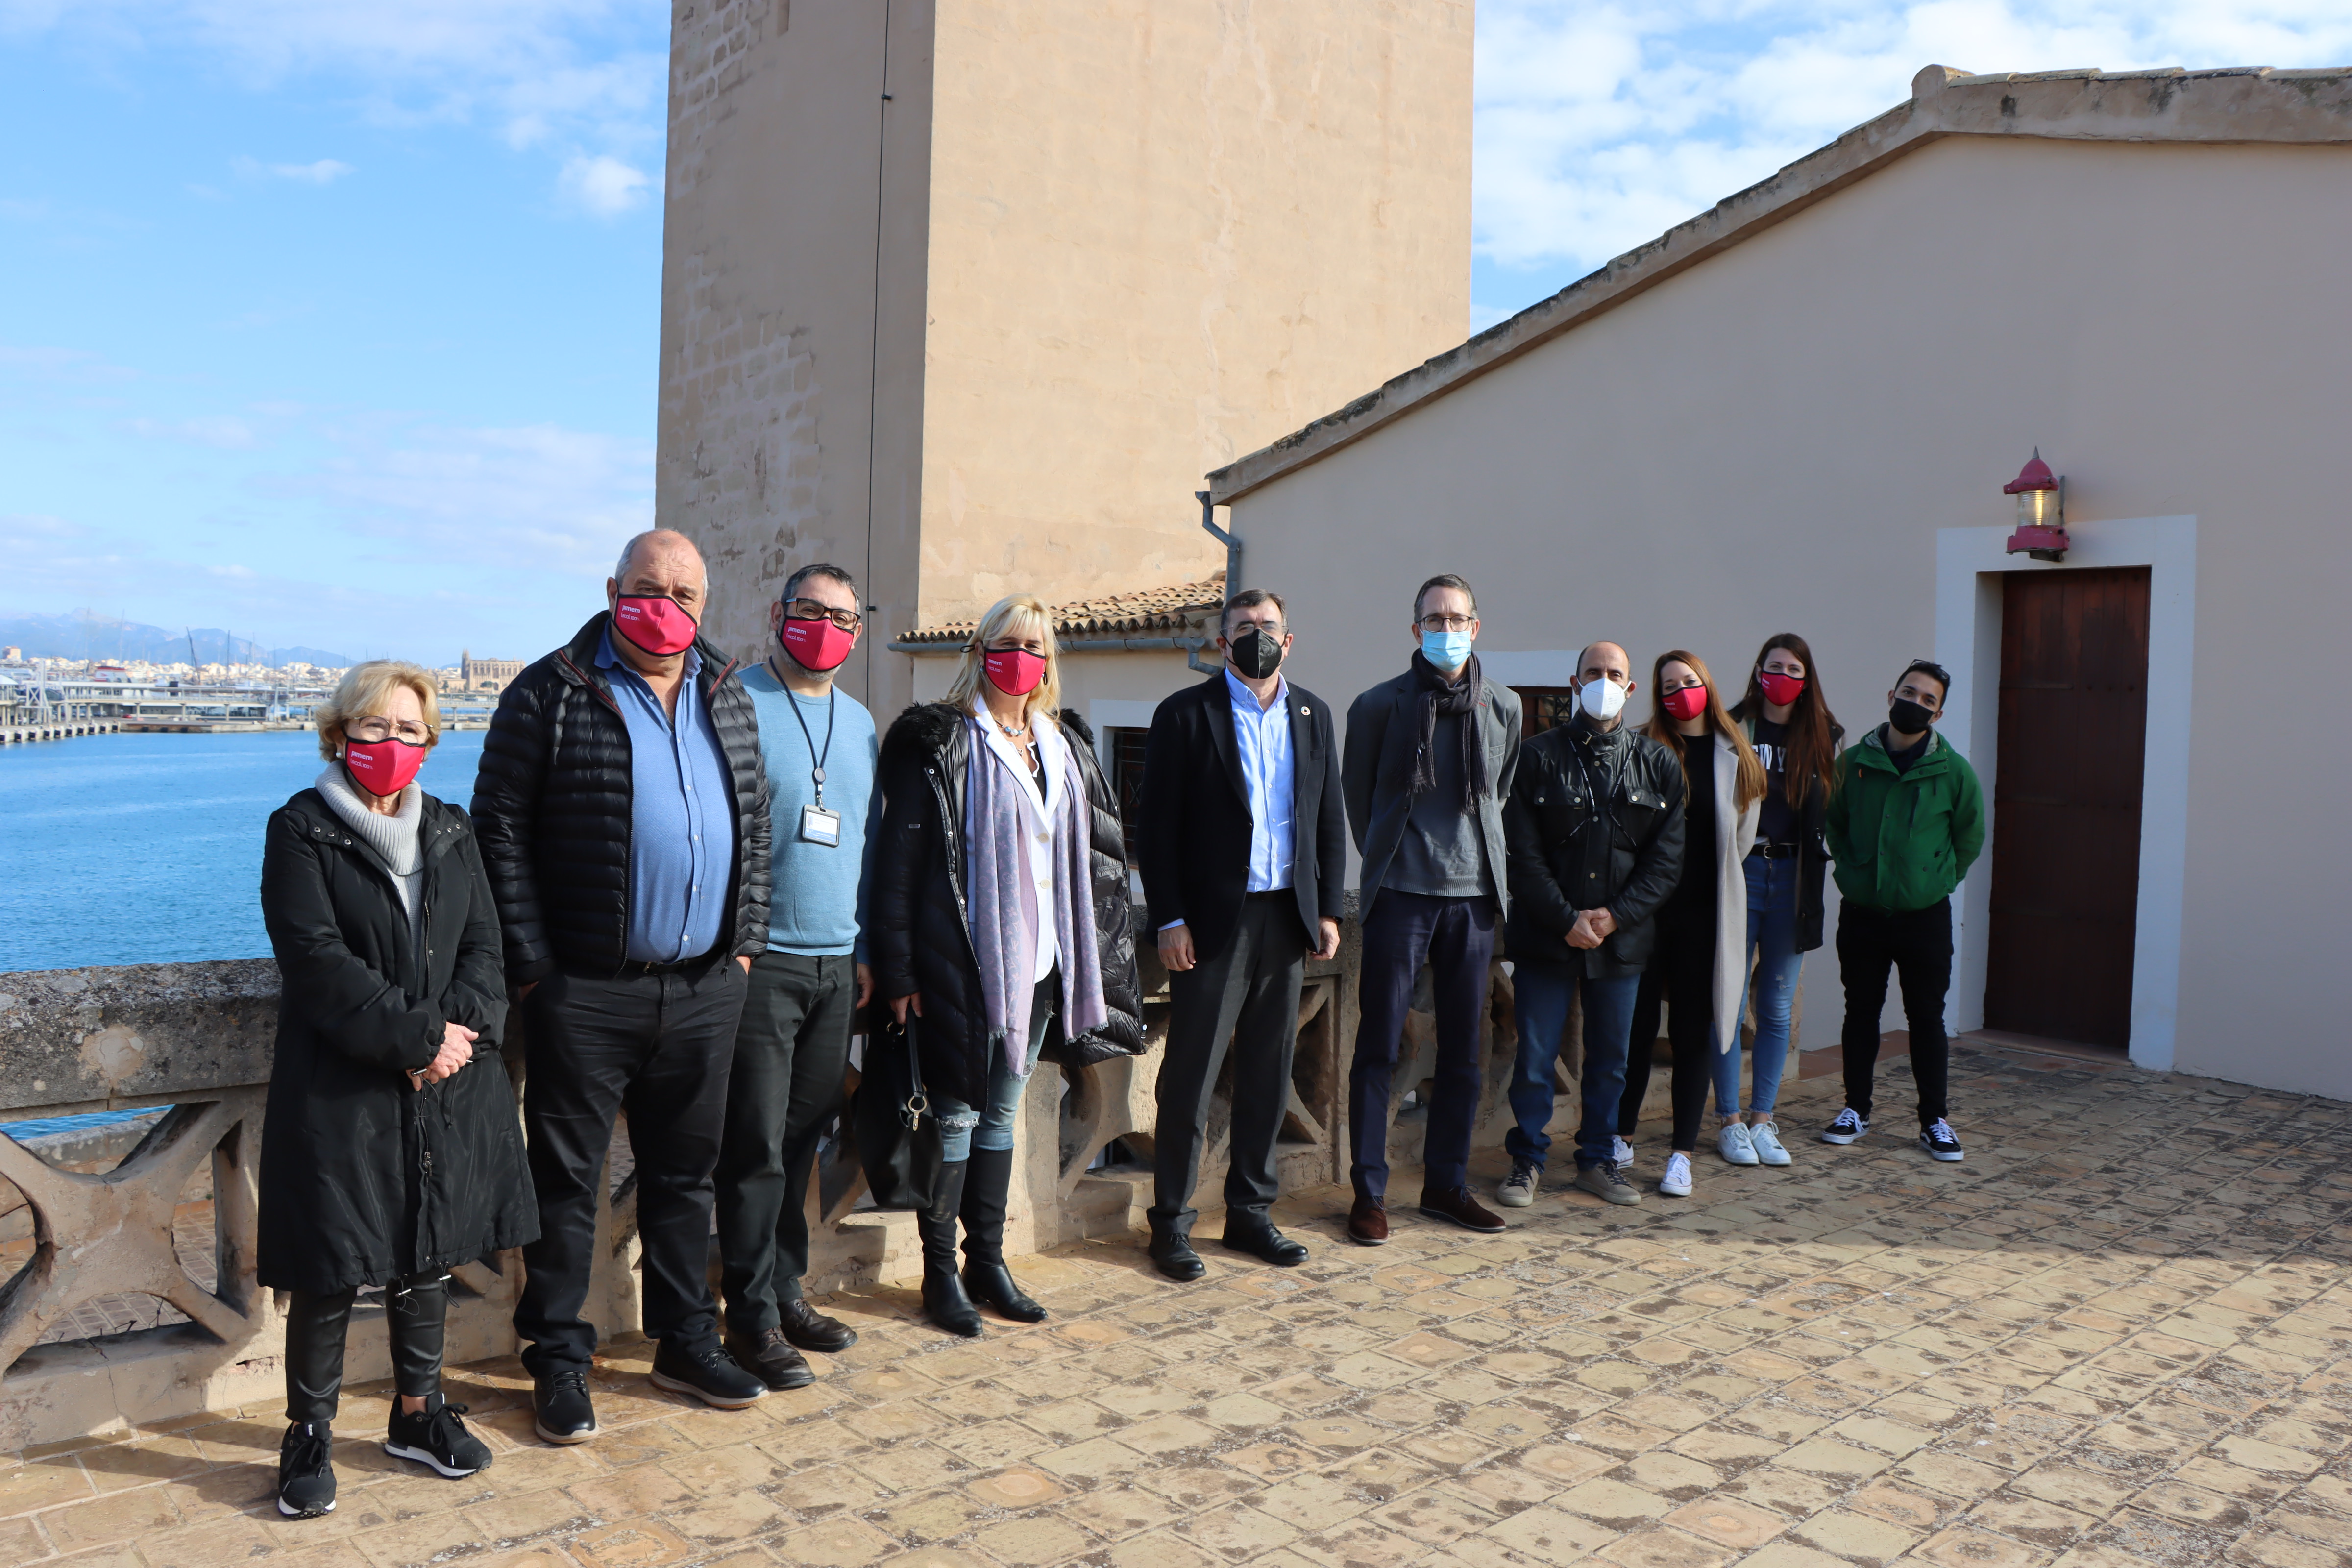 Es reprenen les visites a l'exposició de senyals marítims del far de Portopí al port de Palma